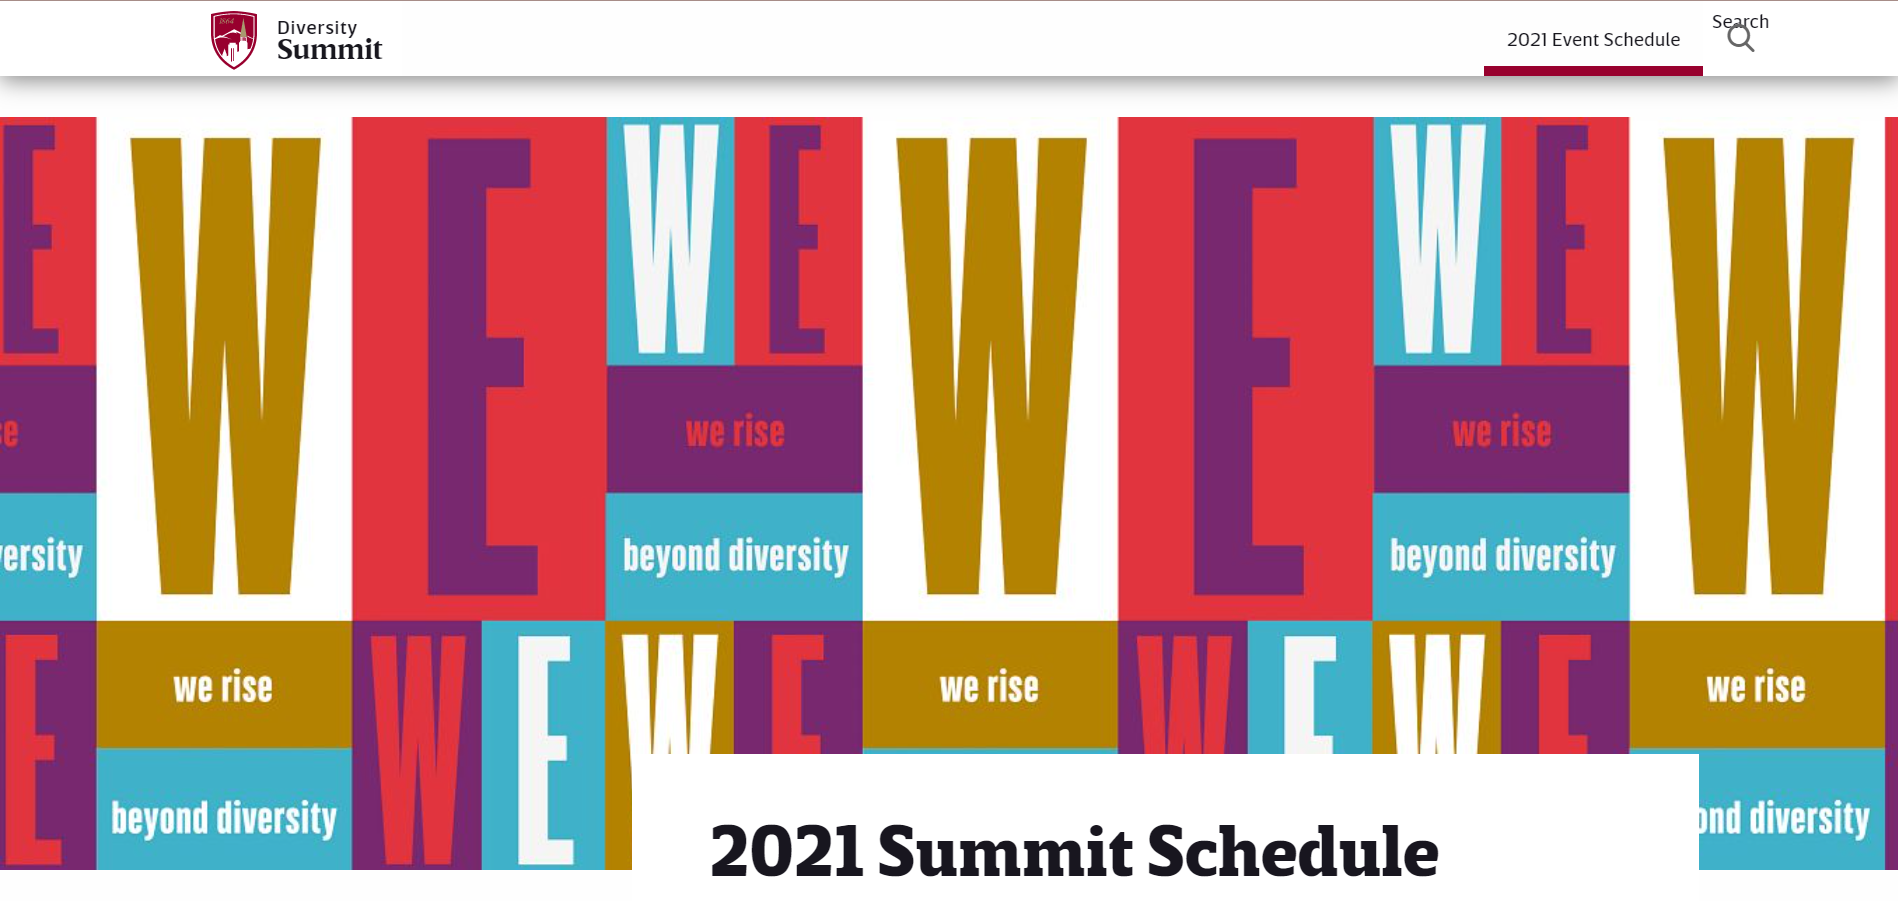 Diversity Summit Update